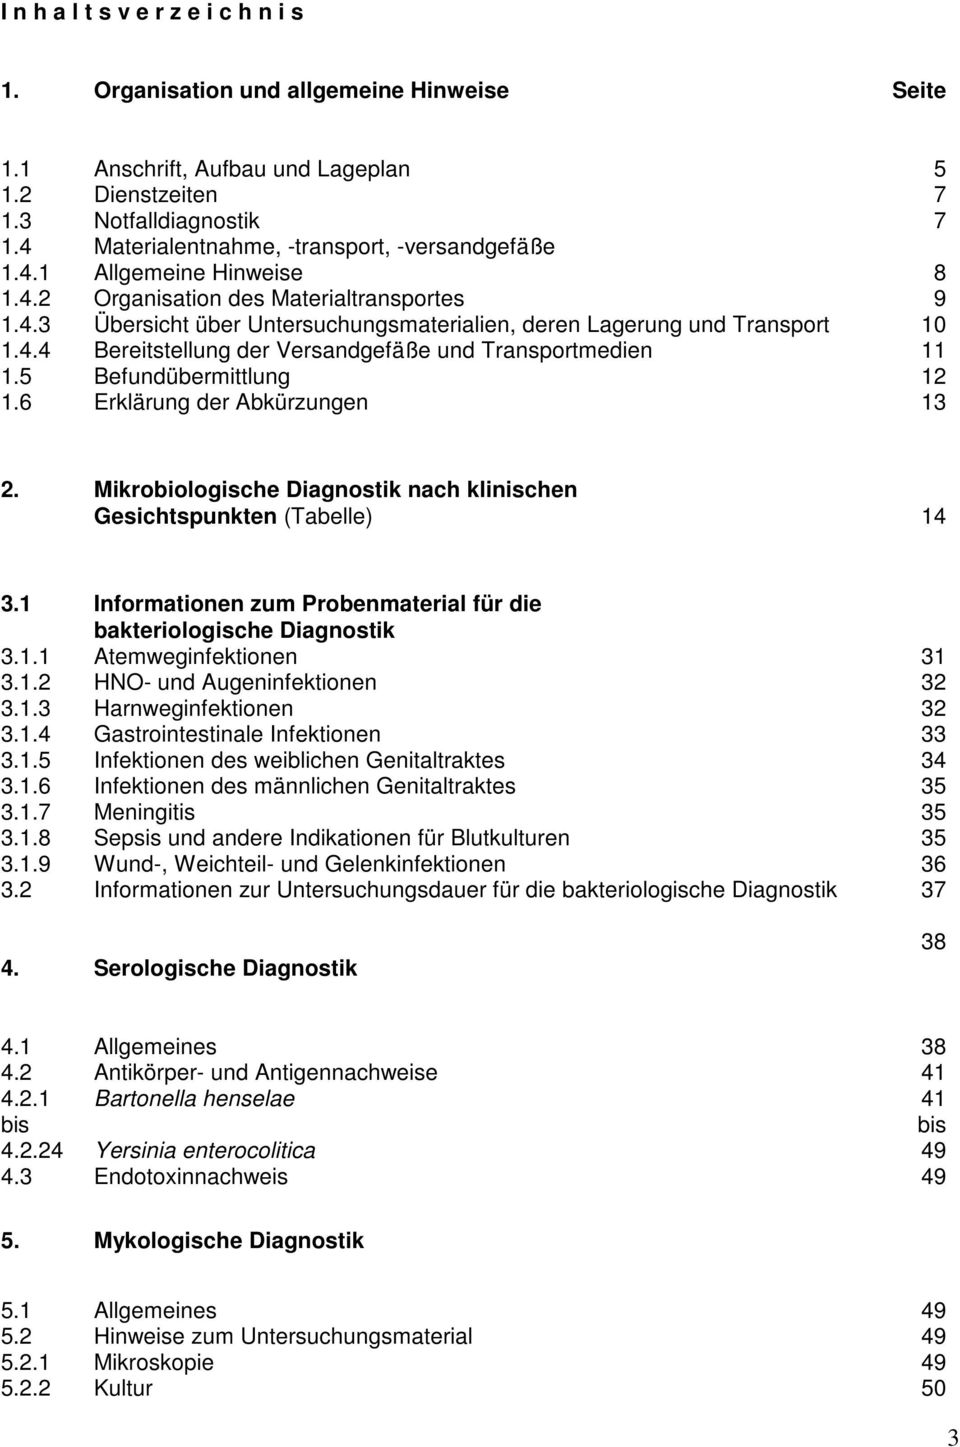 4.4 Bereitstellung der Versandgefäße und Transportmedien 11 1.5 Befundübermittlung 12 1.6 Erklärung der Abkürzungen 13 2. Mikrobiologische Diagnostik nach klinischen Gesichtspunkten (Tabelle) 14 3.